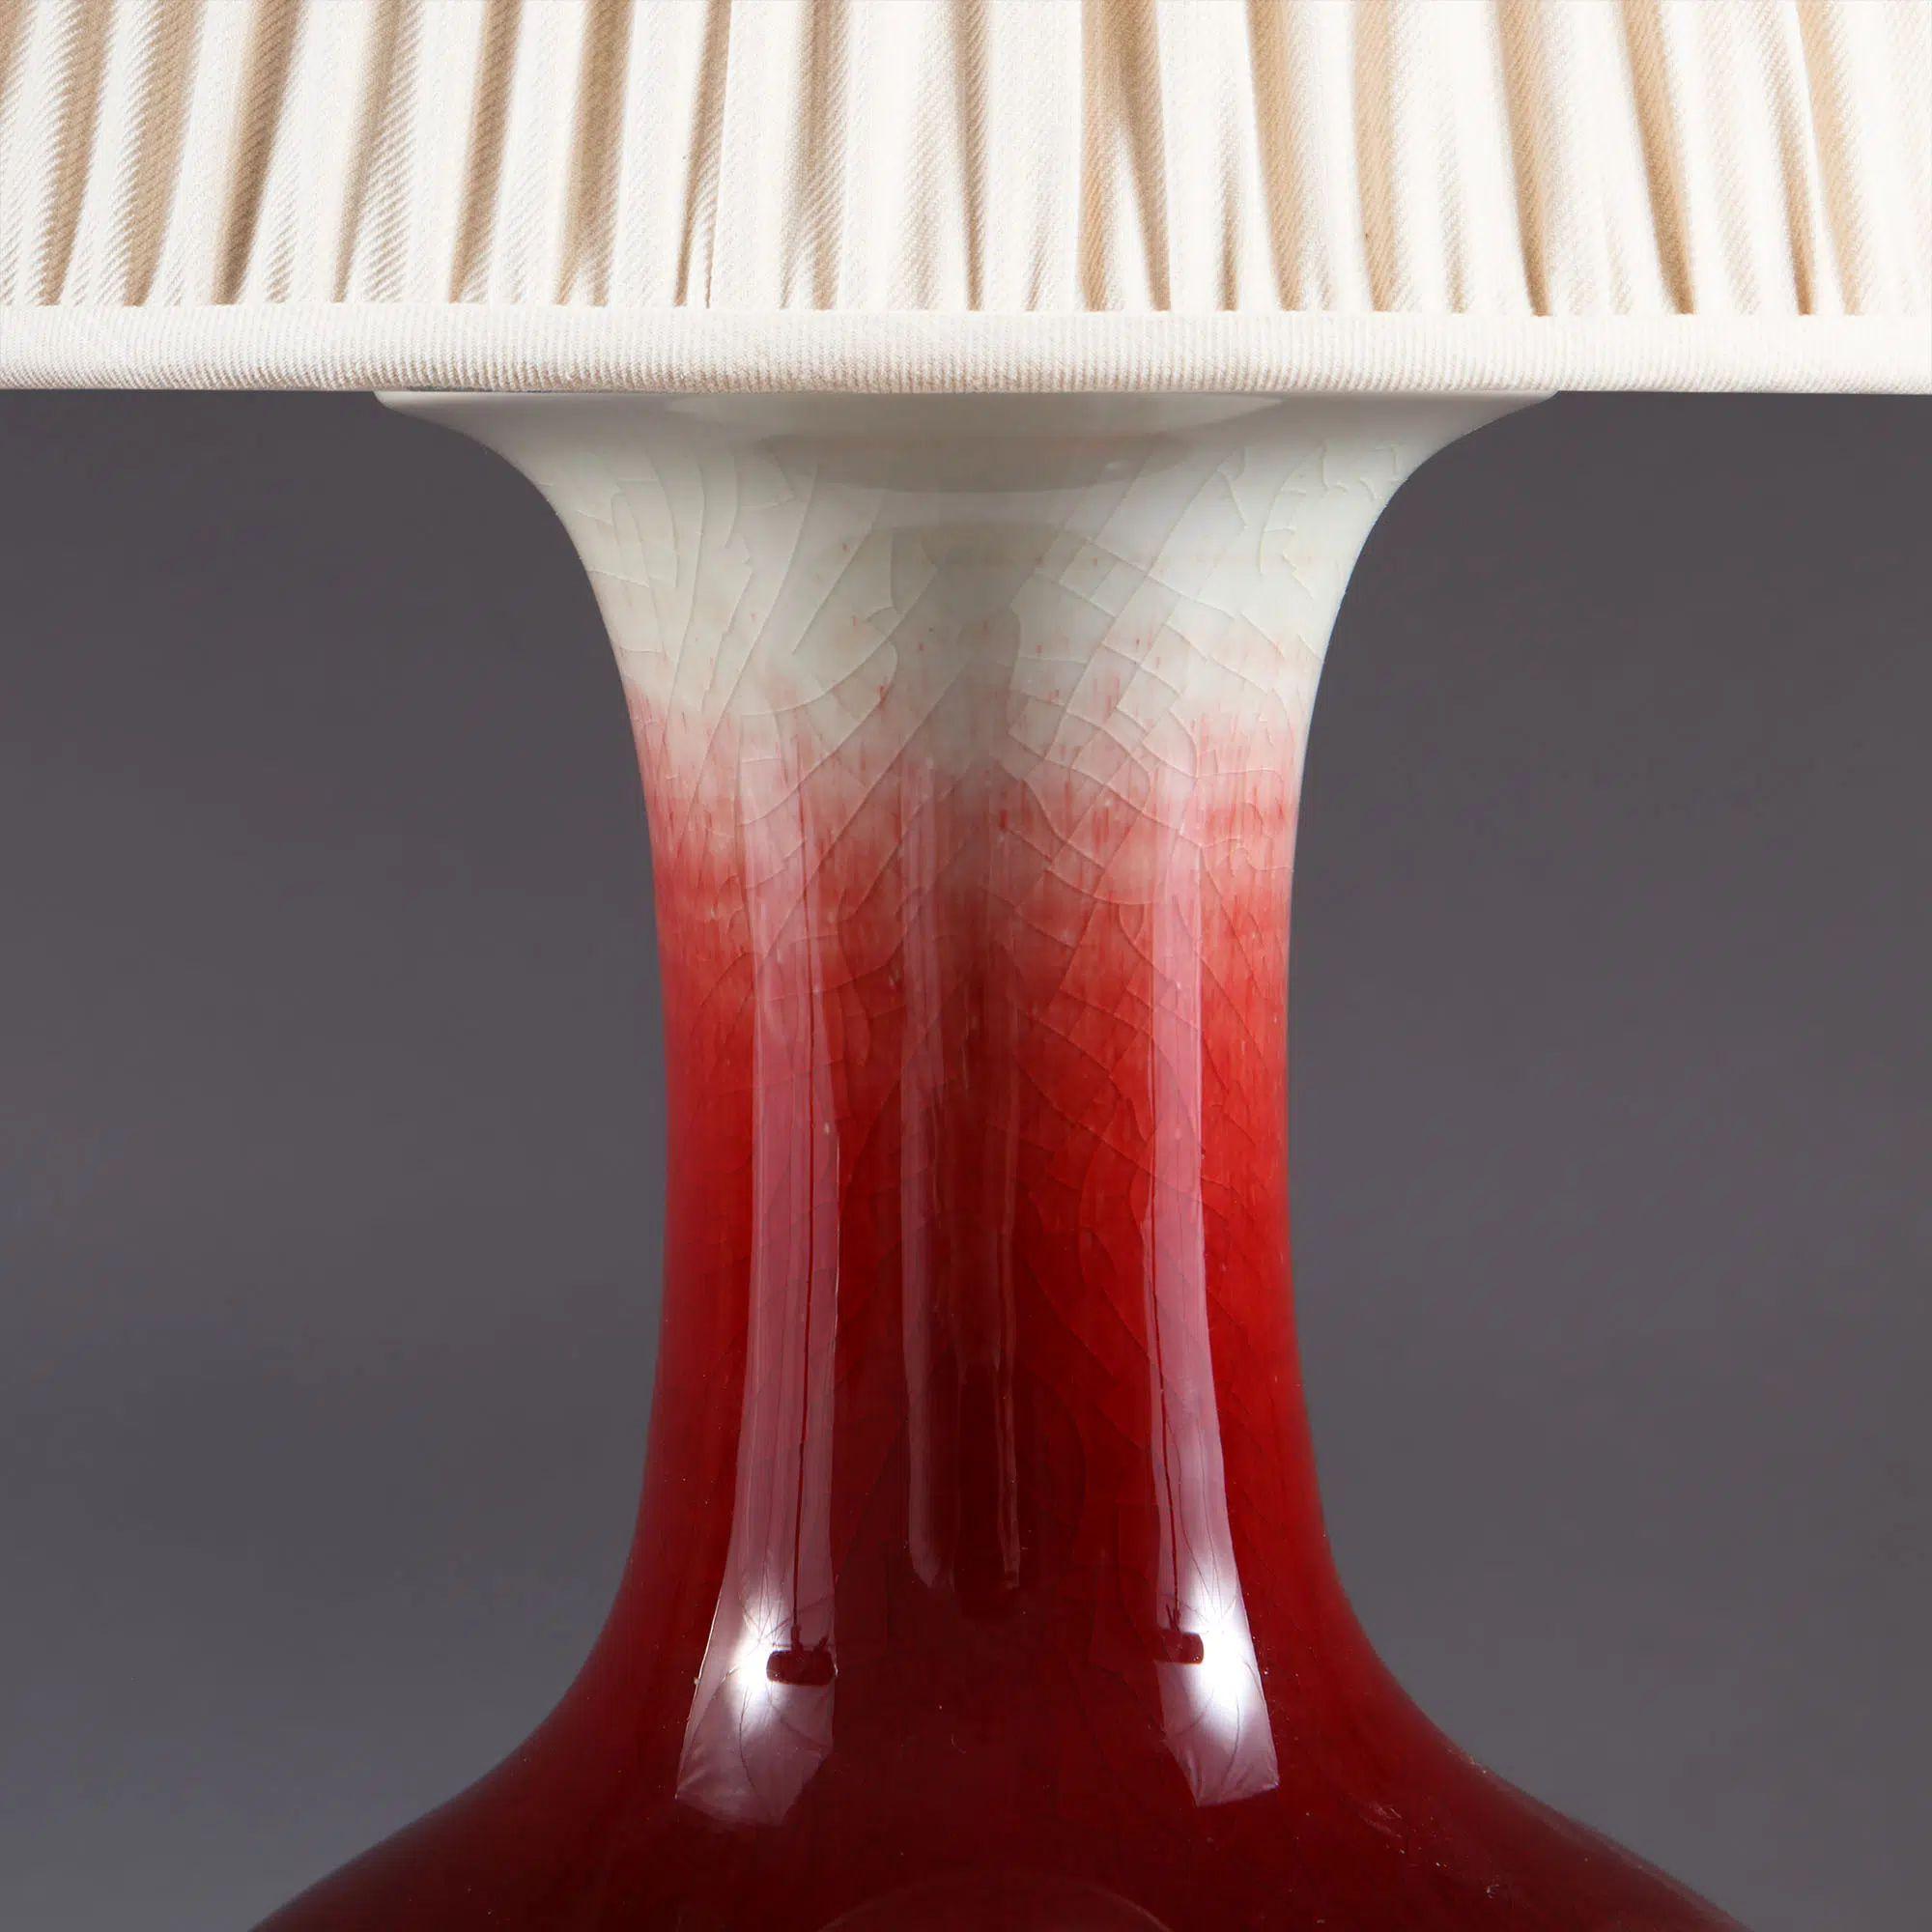 Vase chinois Sang de Bœuf monté en lampe de table.

Un joli vase chinois en forme de sang de bœuf à bord évasé, dont le col passe progressivement d'une glaçure claire à un riche rouge sang, et dont la base est ornée de paillettes bleues et